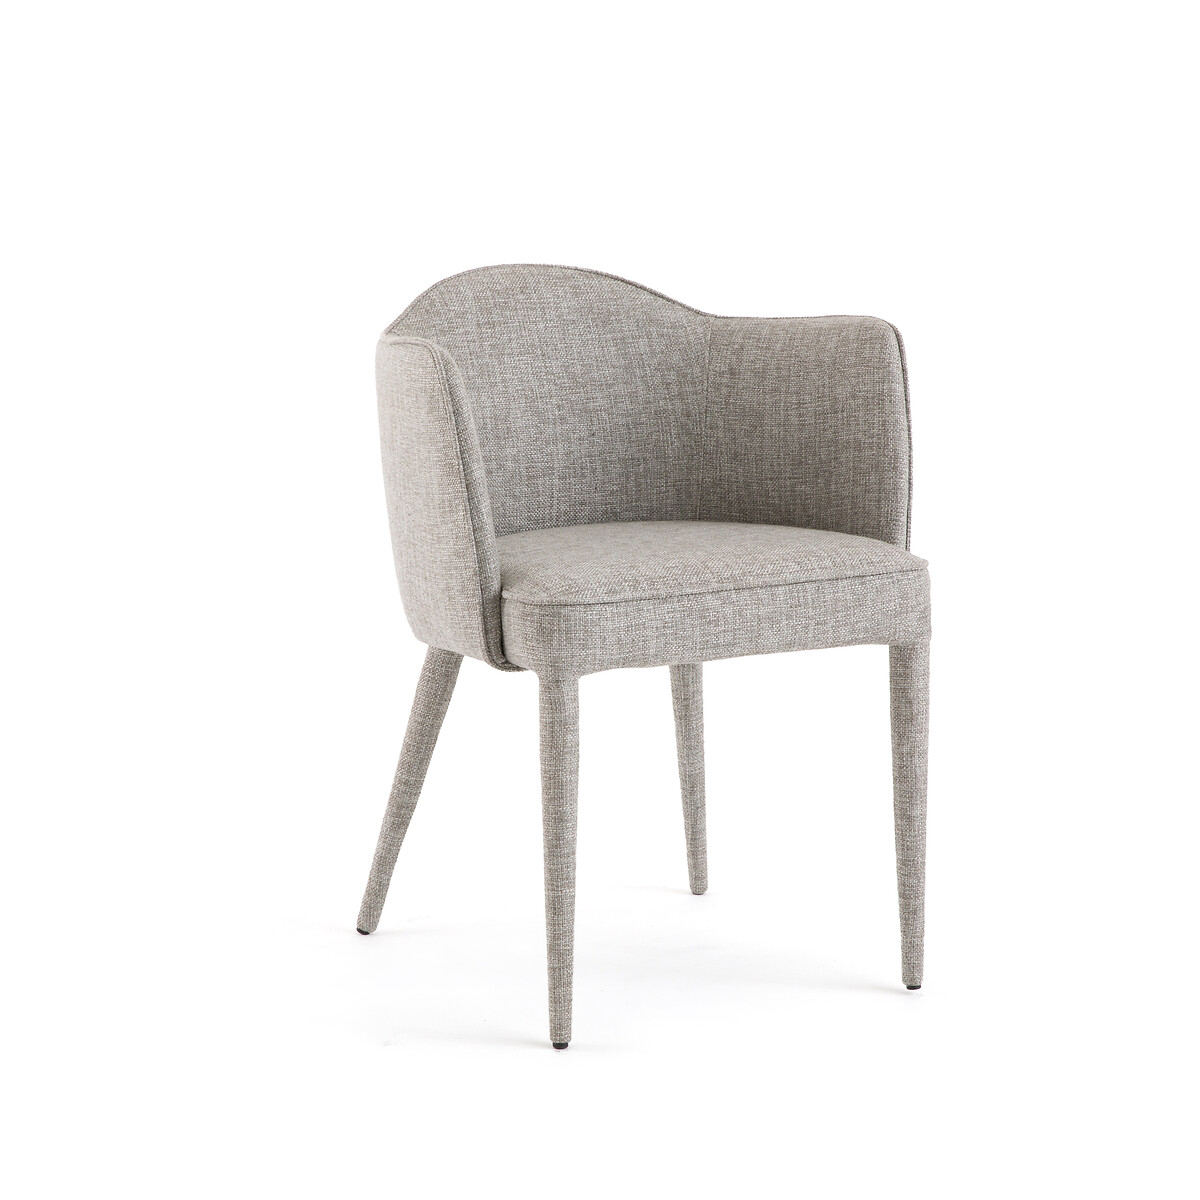 Кресло Для столовой из плетеной ткани меланж Leos единый размер серый